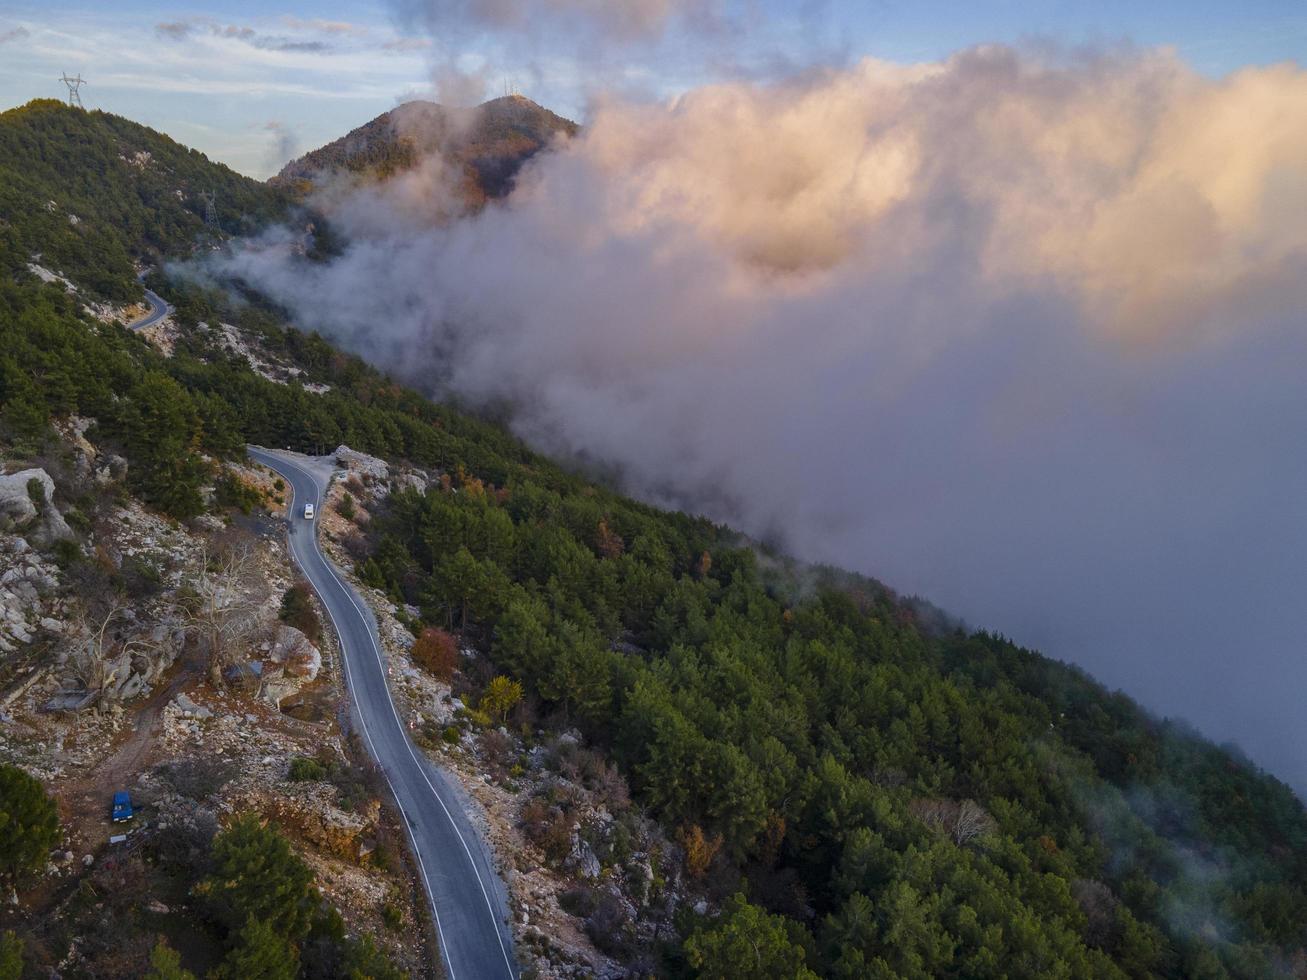 vue imprenable sur les nuages et la route depuis l'antenne dans la nature photo